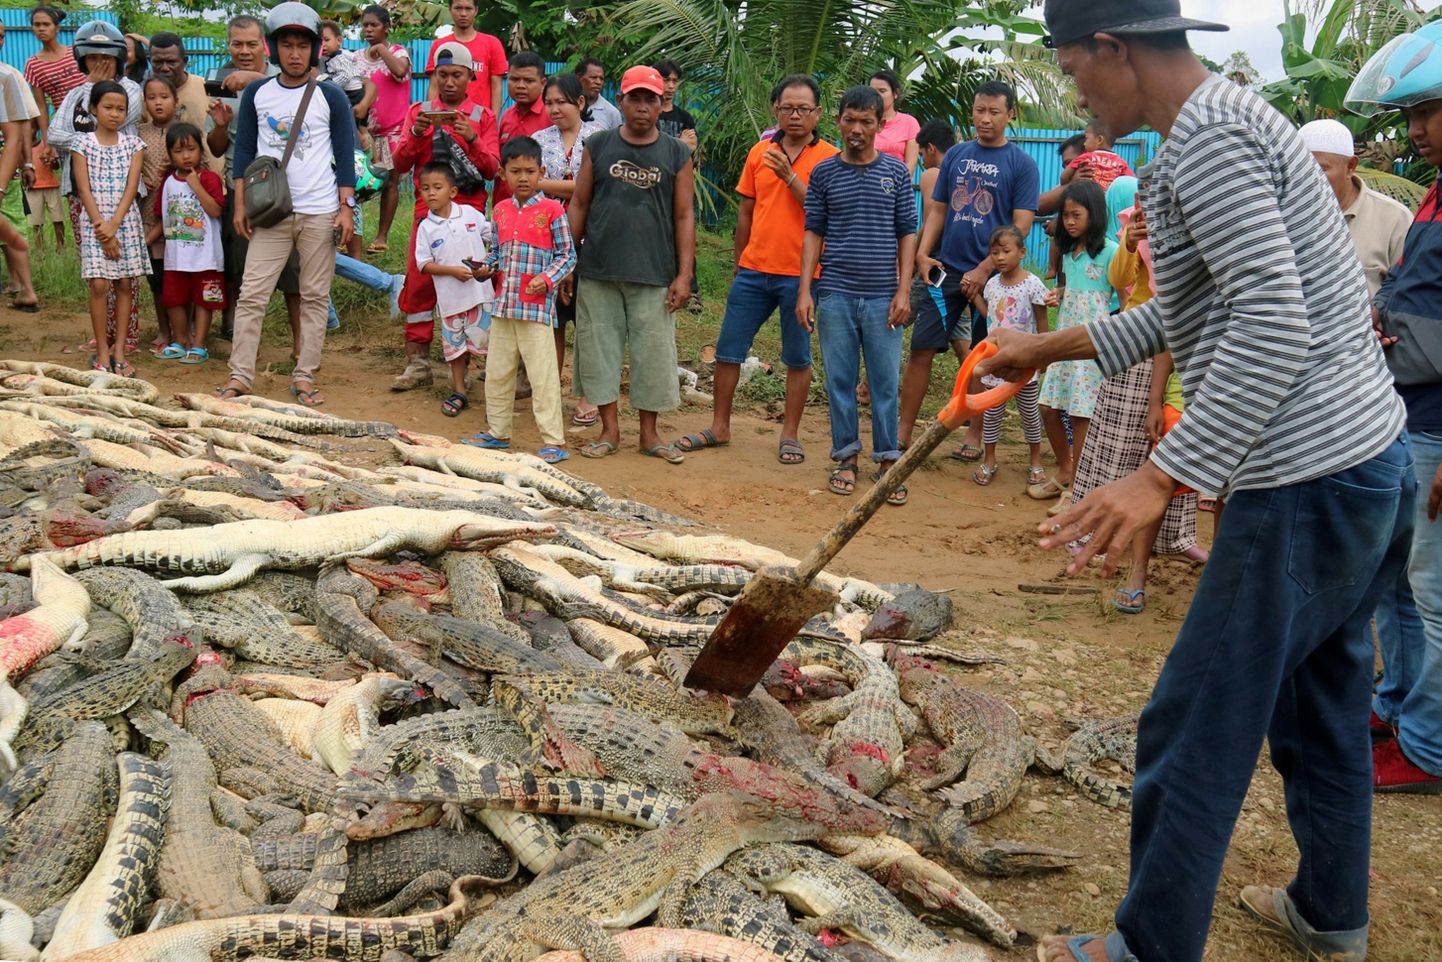 Rahvas vaatamas tapetud krokodille Indoneesias Paapua provintsis.